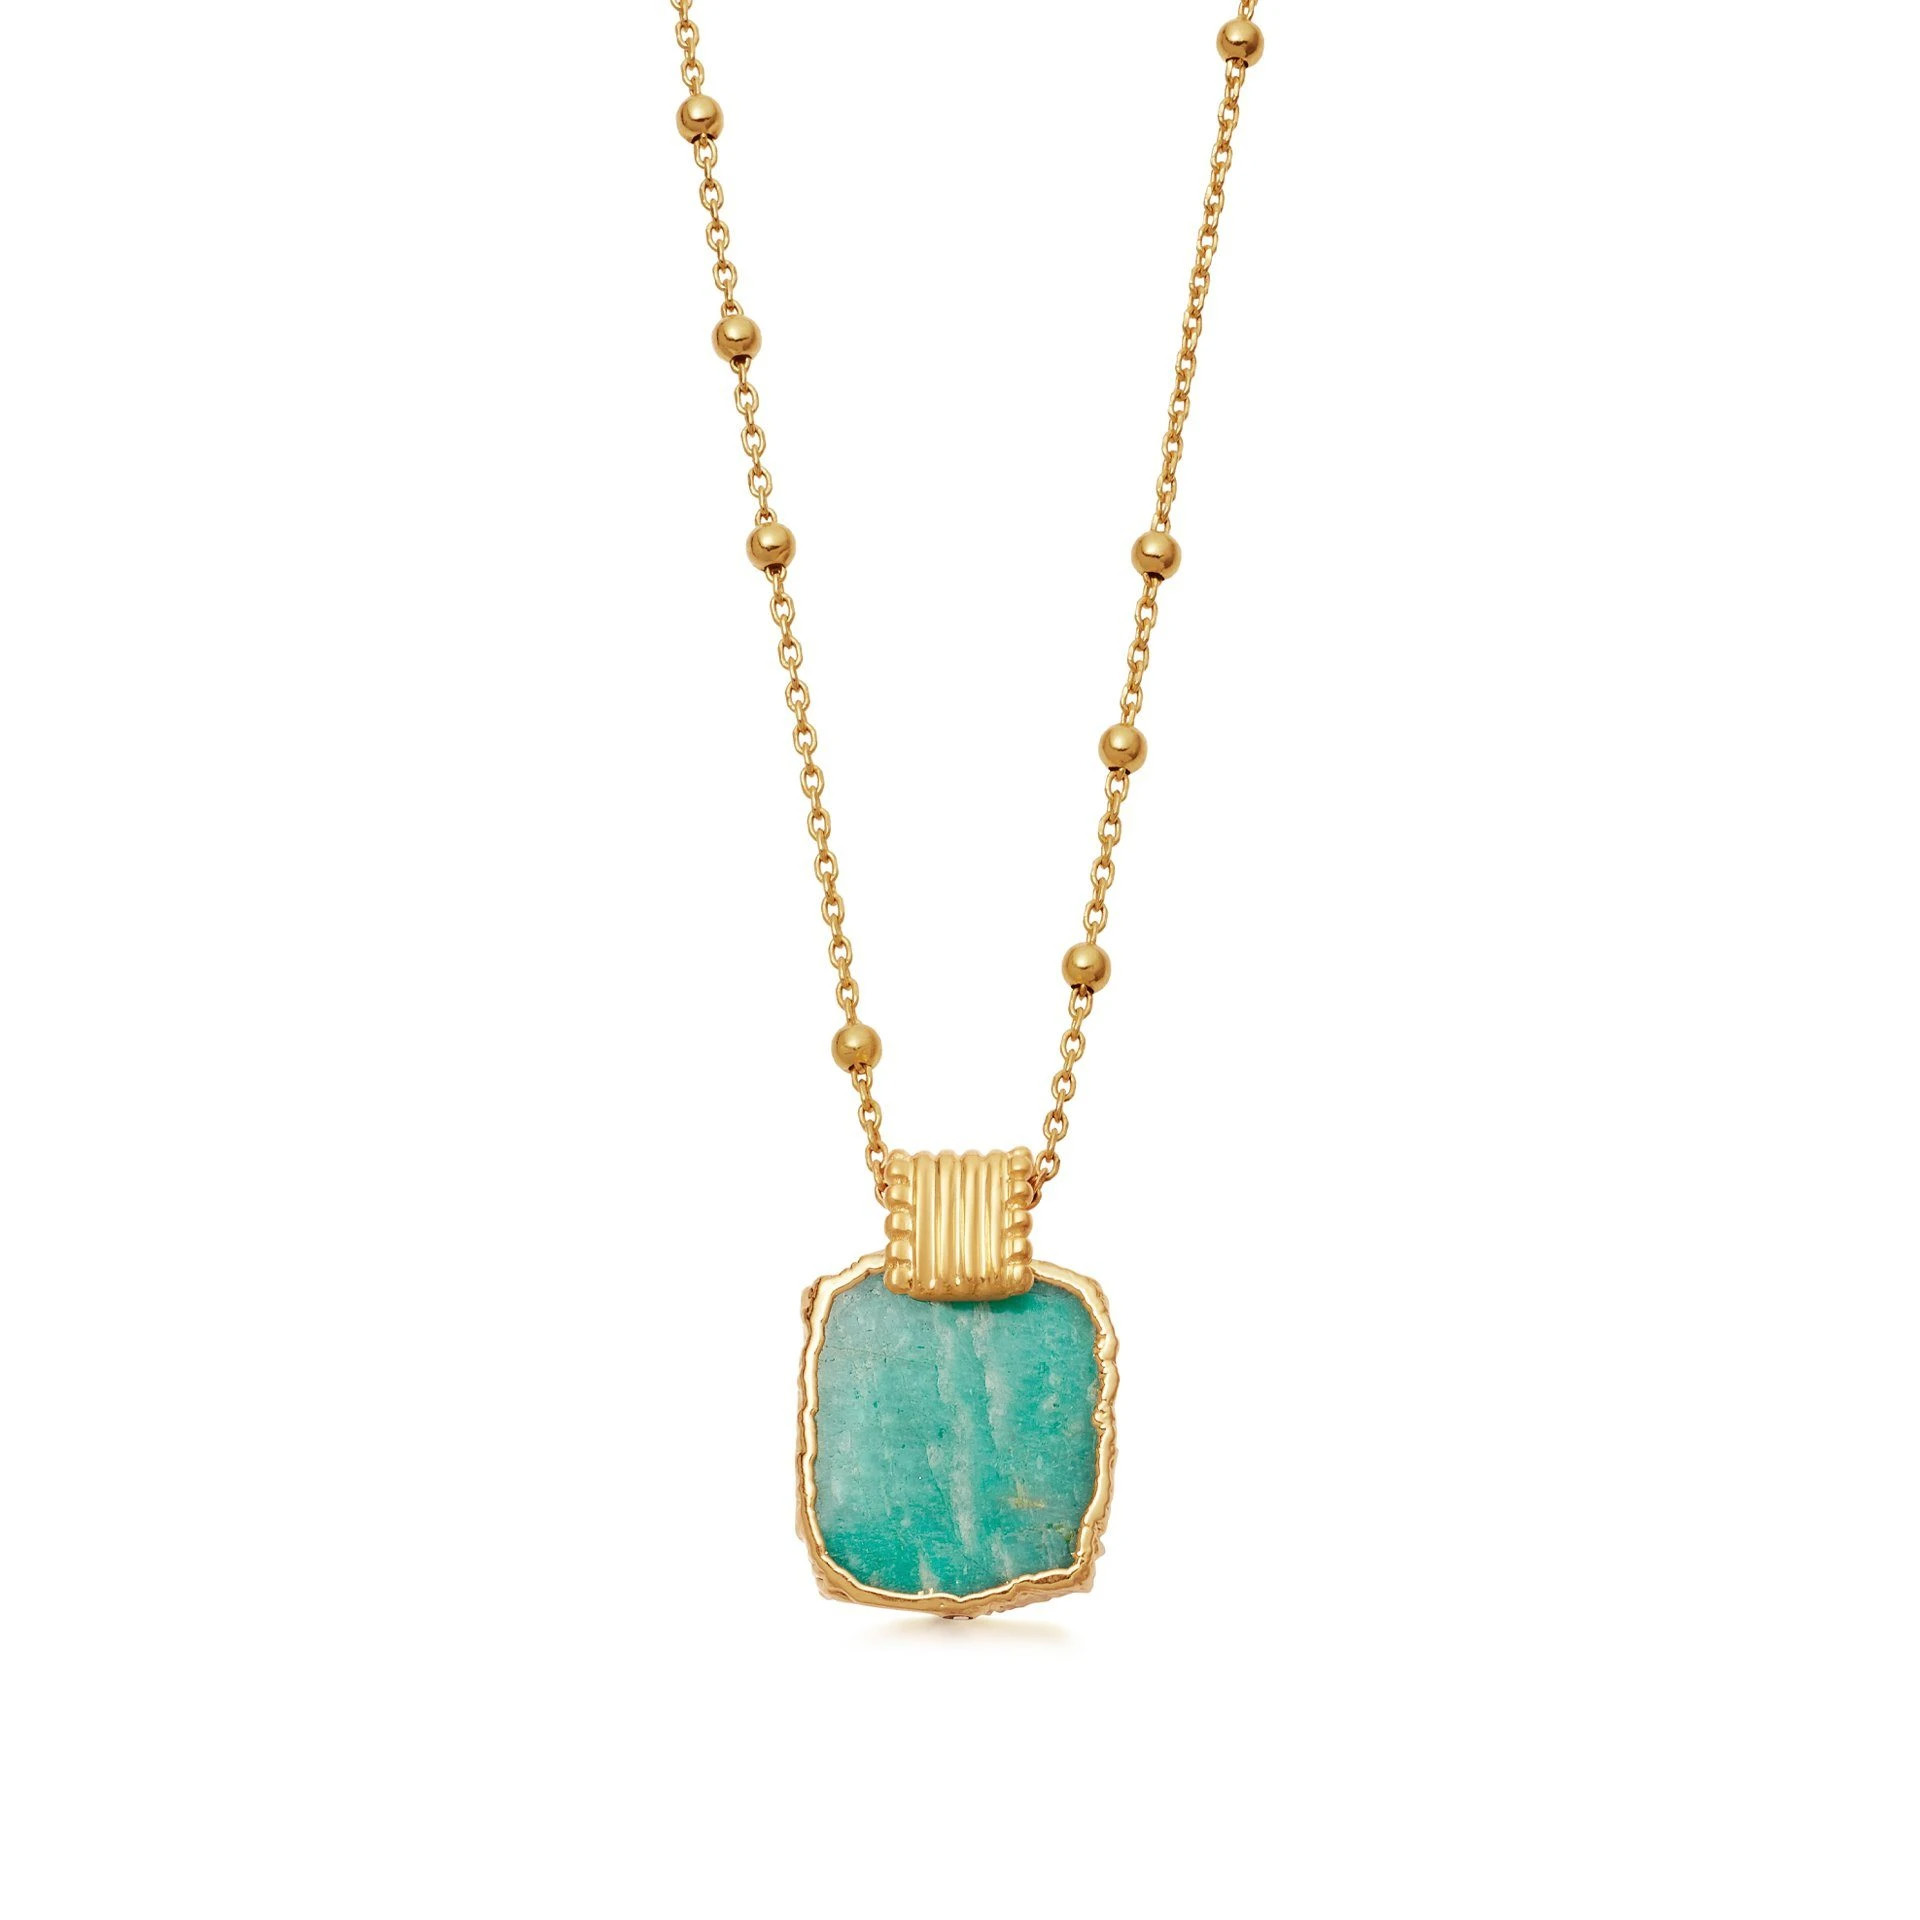 Оптовая продажа OEM 18-каратного золота Vermeil с подвеской OEM/ODM ювелирное ожерелье на серебре Индивидуальный дизайн